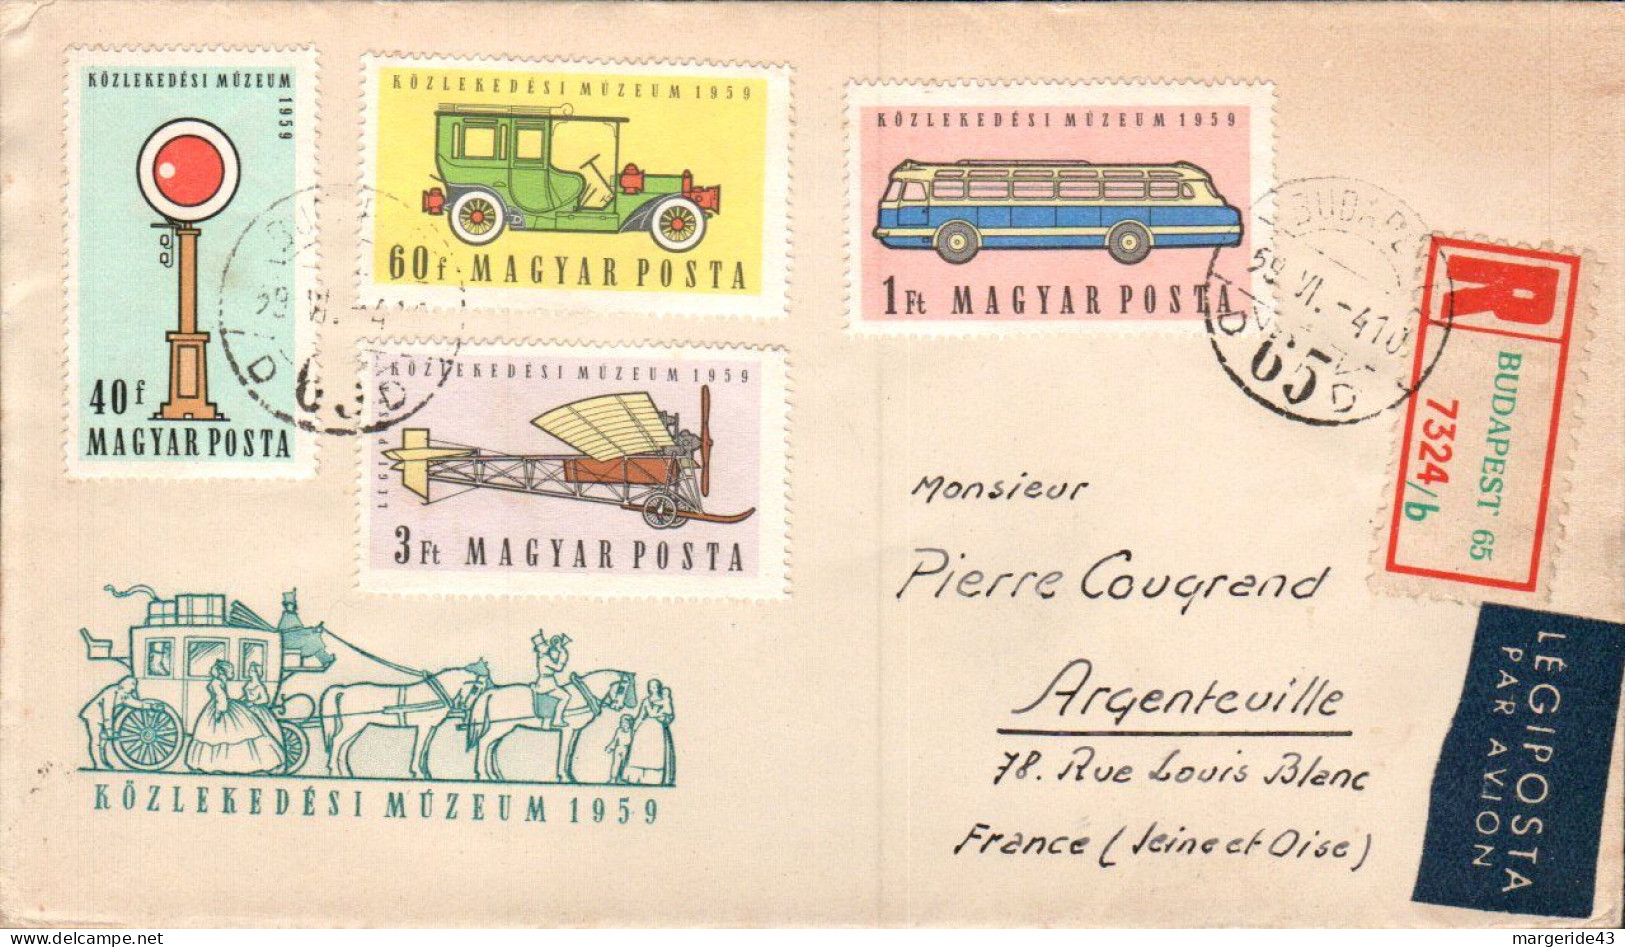 HONGRIE AFFRANCHISSEMENT COMPOSE SUR LETTRE RECOMMANDEE POUR LA FRANCE 1959 - Storia Postale